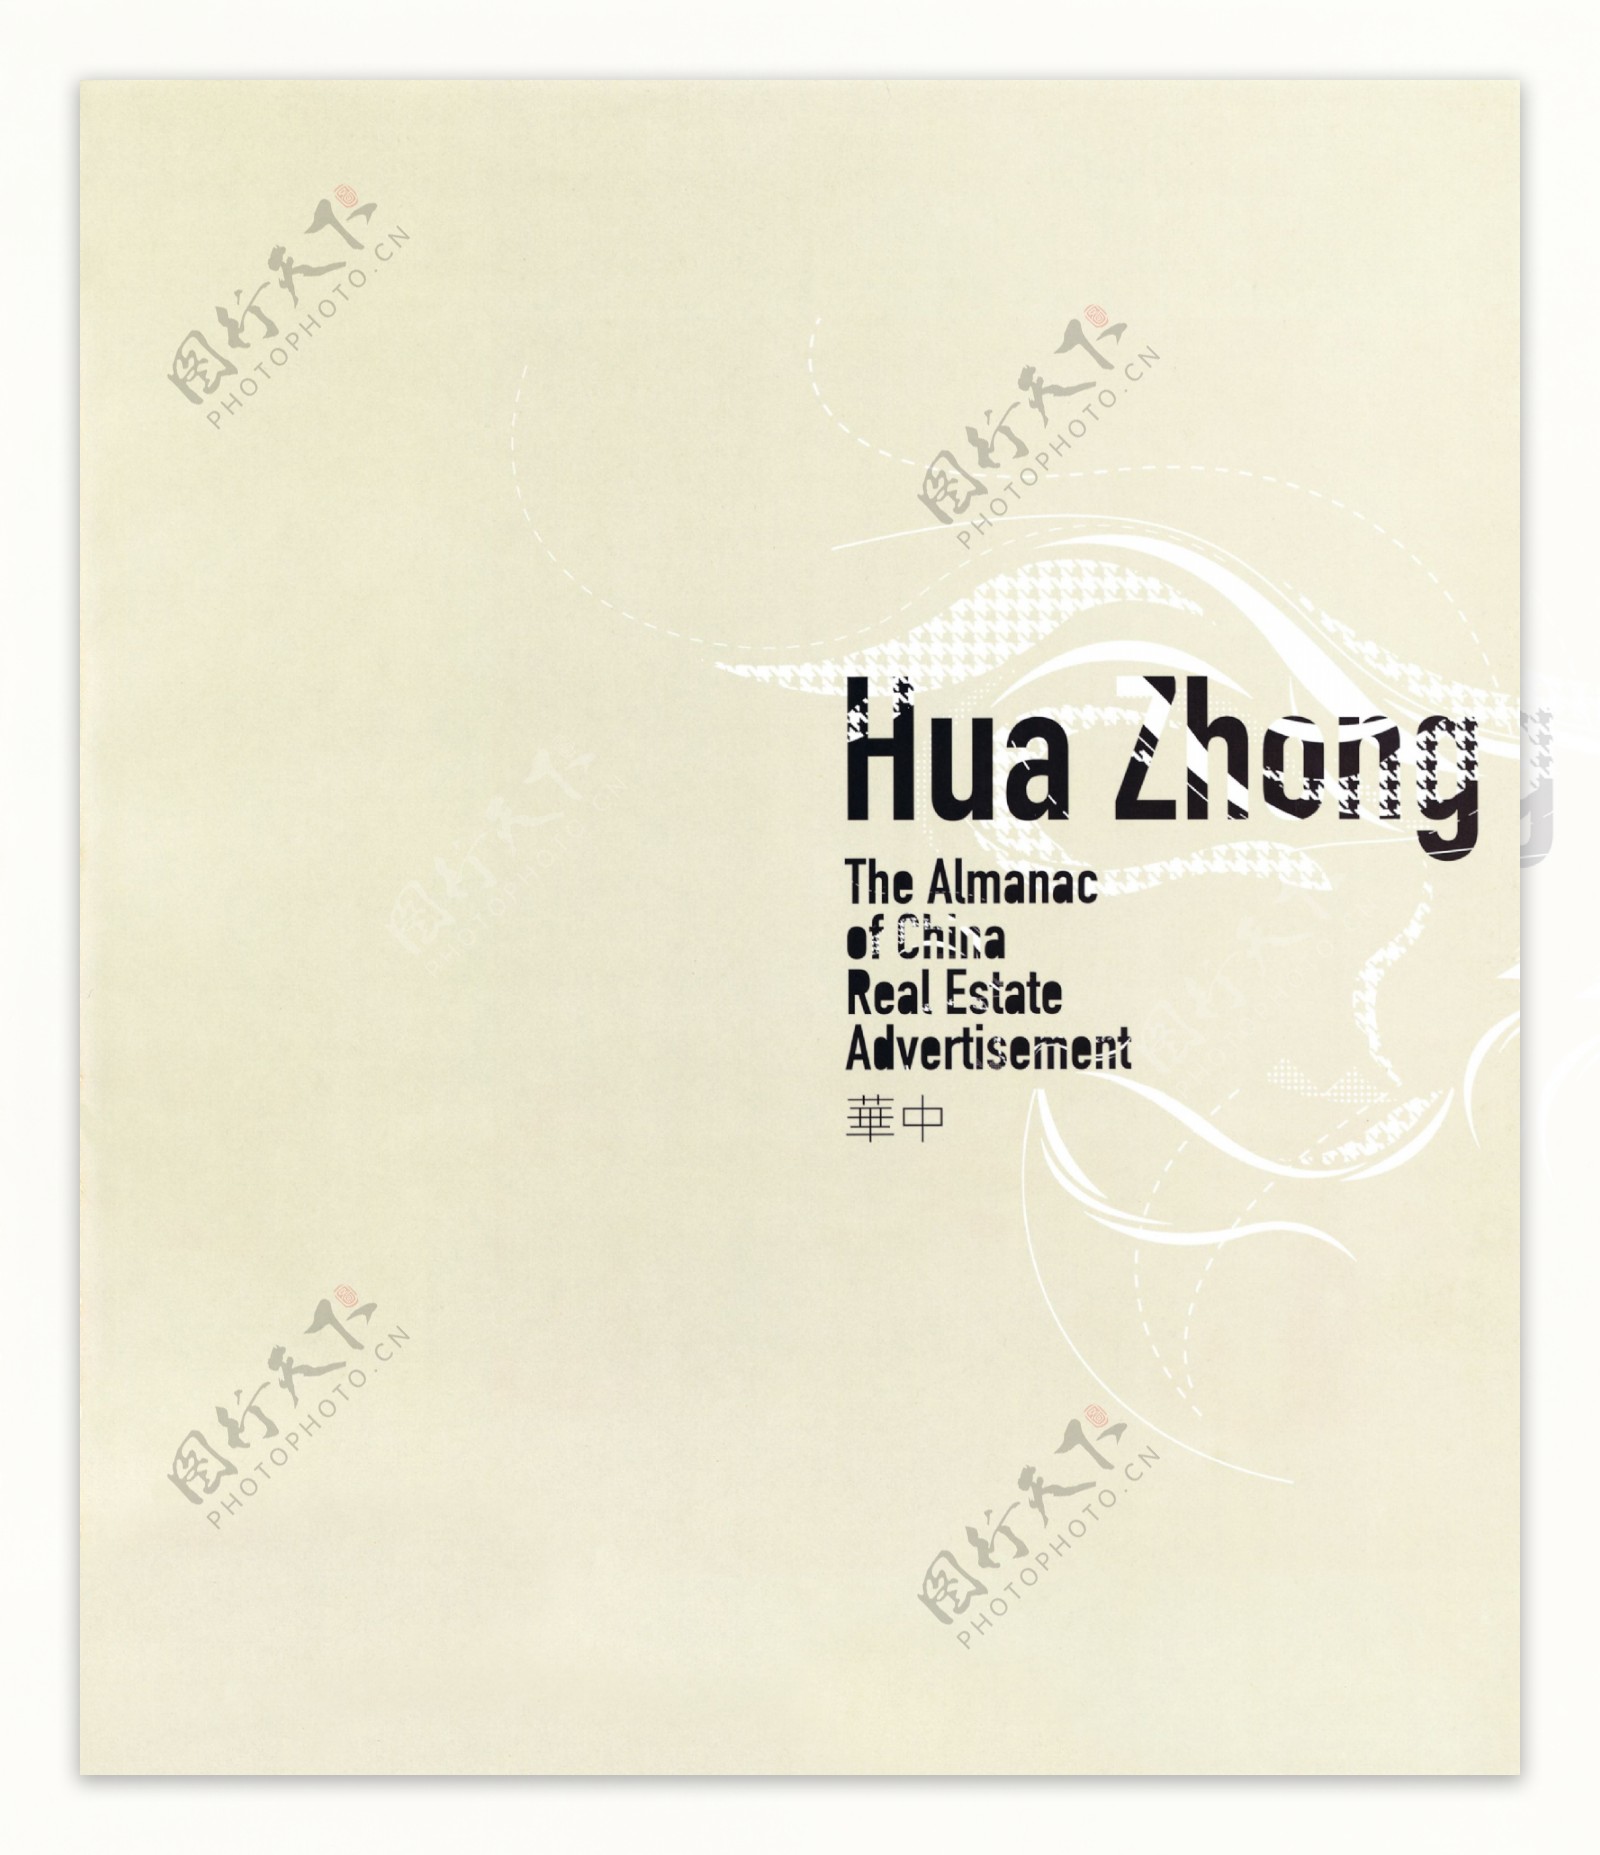 中国房地产广告年鉴第二册创意设计0327